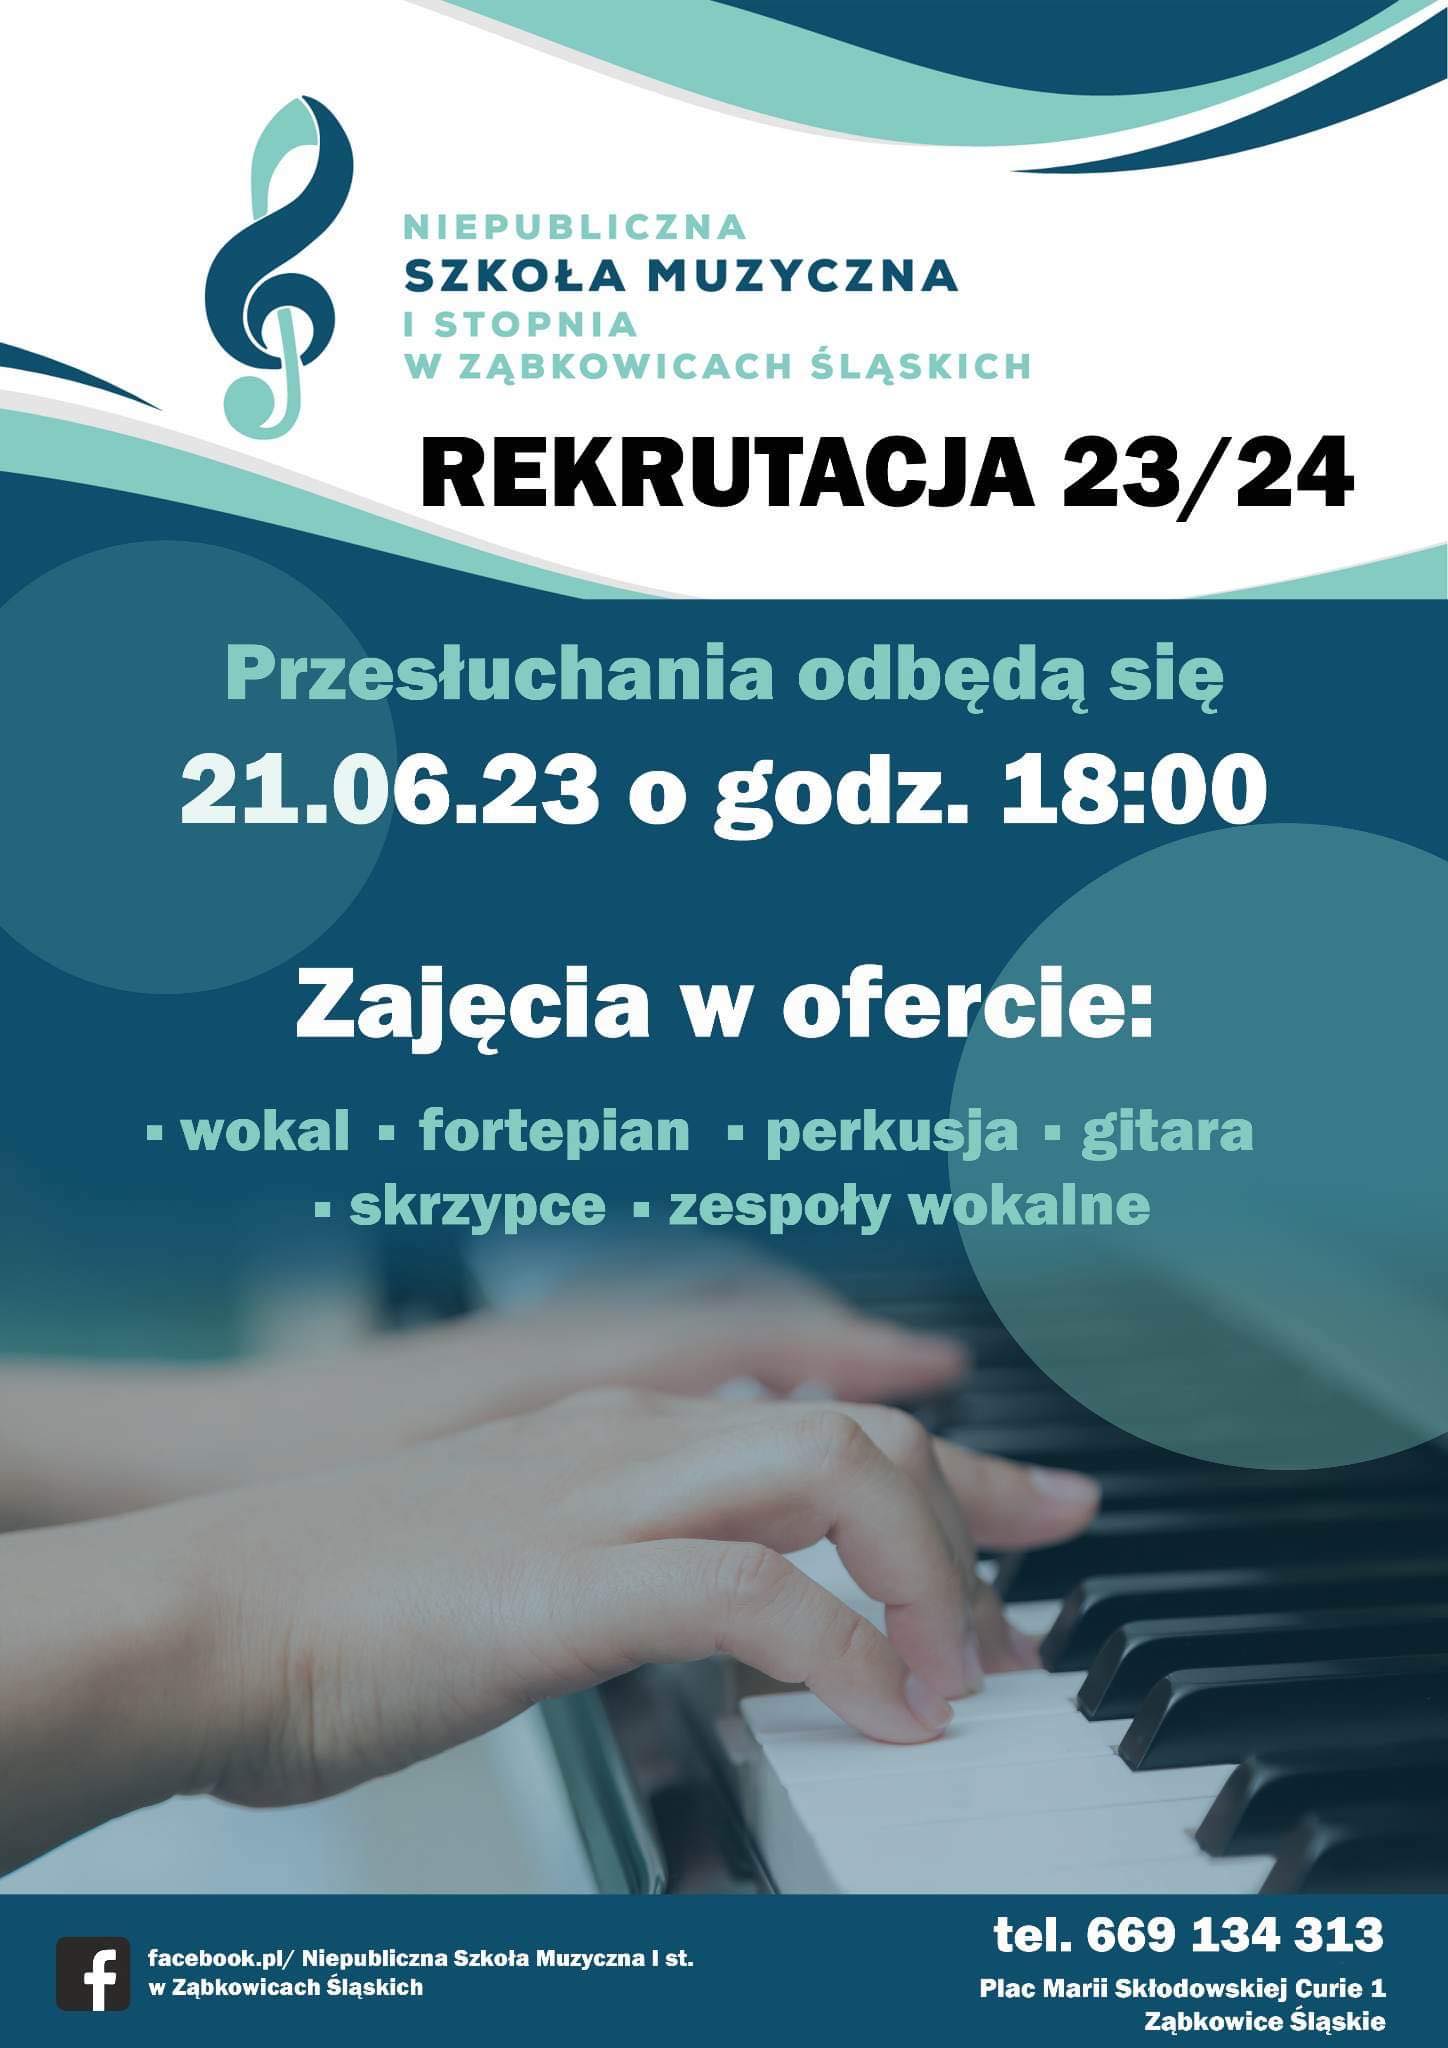 Plakat informujący o rekrutacji 23/34 do niepublicznej szkoły muzycznej w Ząbkowicach Śląskich. Przesłuchania odbyły się 21 czerwca 2023r.